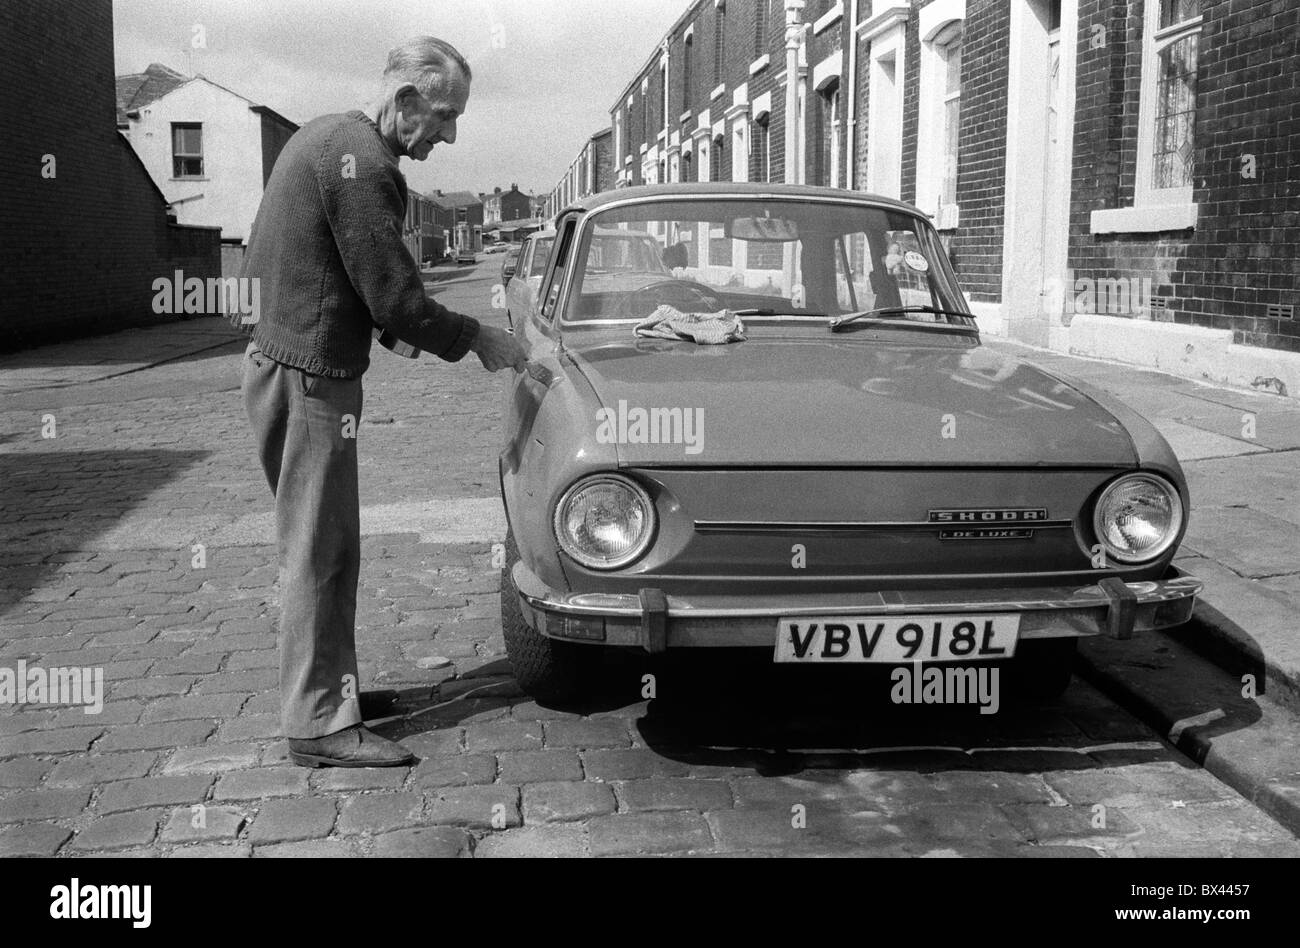 Arbeiter-Klasse-weißes Männergemälde über Rostschäden an seinem Honda-Auto Blackburn Lancashire 1983. Straßenszene Kopfsteinpflasterstraßen Terrassenhaus Straßenszene Daily Life 1980s UK. HOMER SYKES Stockfoto